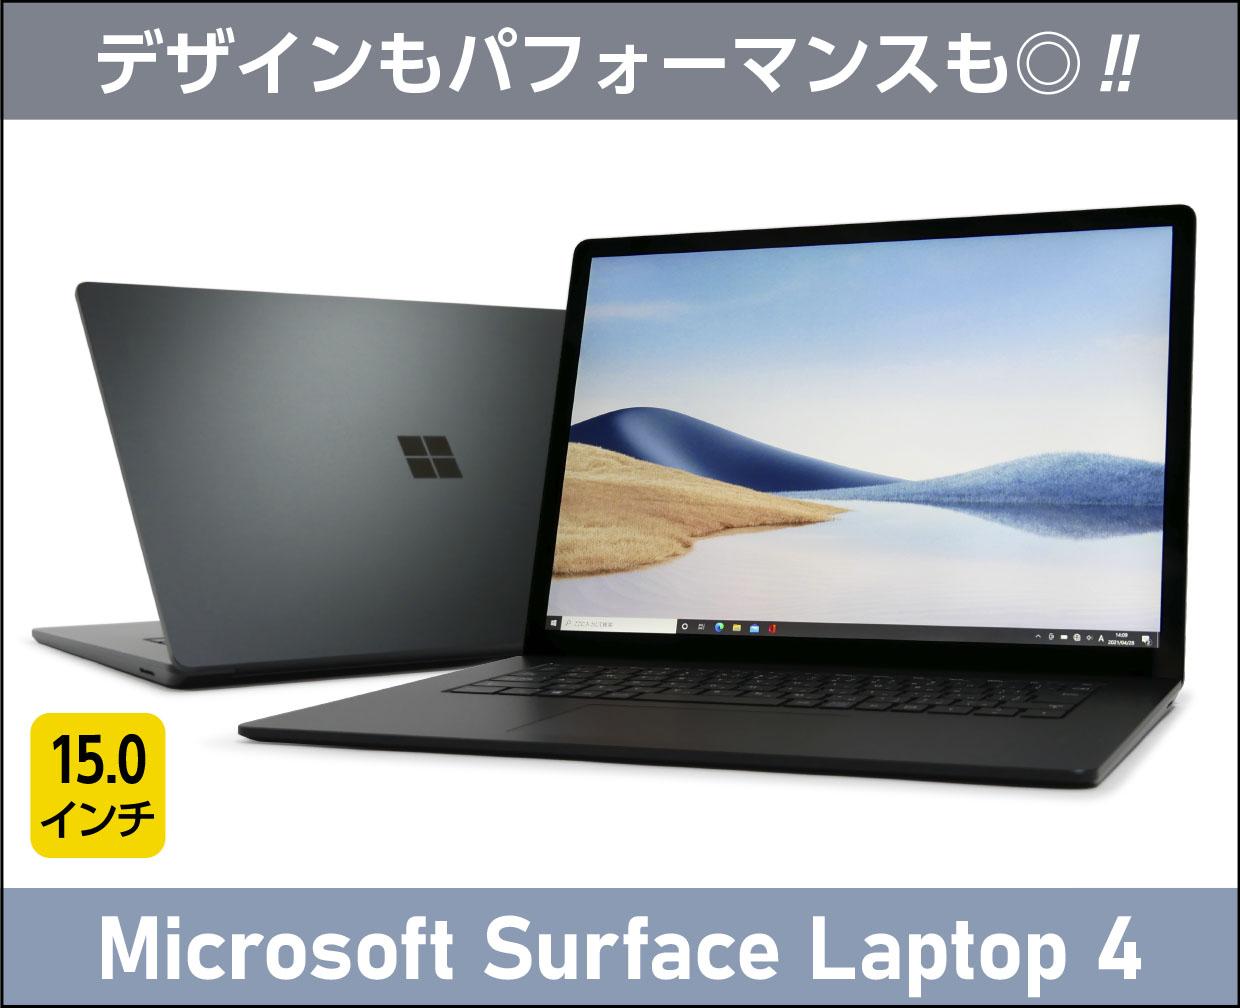 「Surface Laptop 4」15インチモデルは作業面での実用性も高いことが判明！デザインがいいだけじゃない！【実機レビュー】 | これ